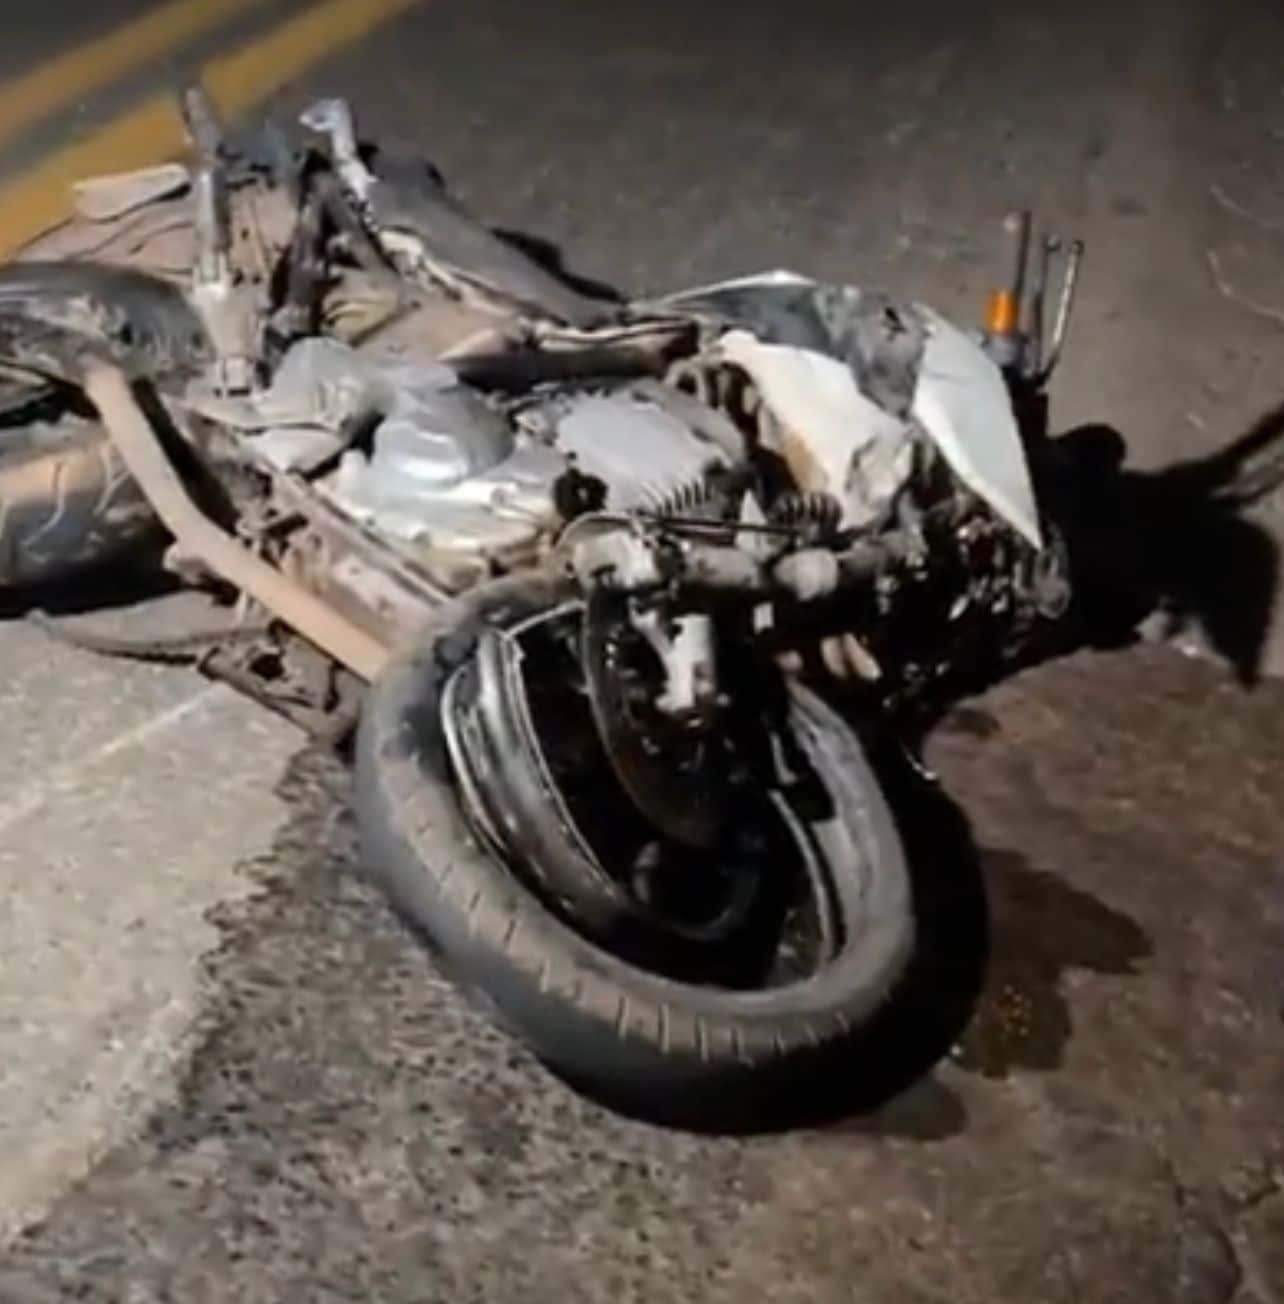 Motociclista morre em grave acidente na BR-070 em Cuiabá